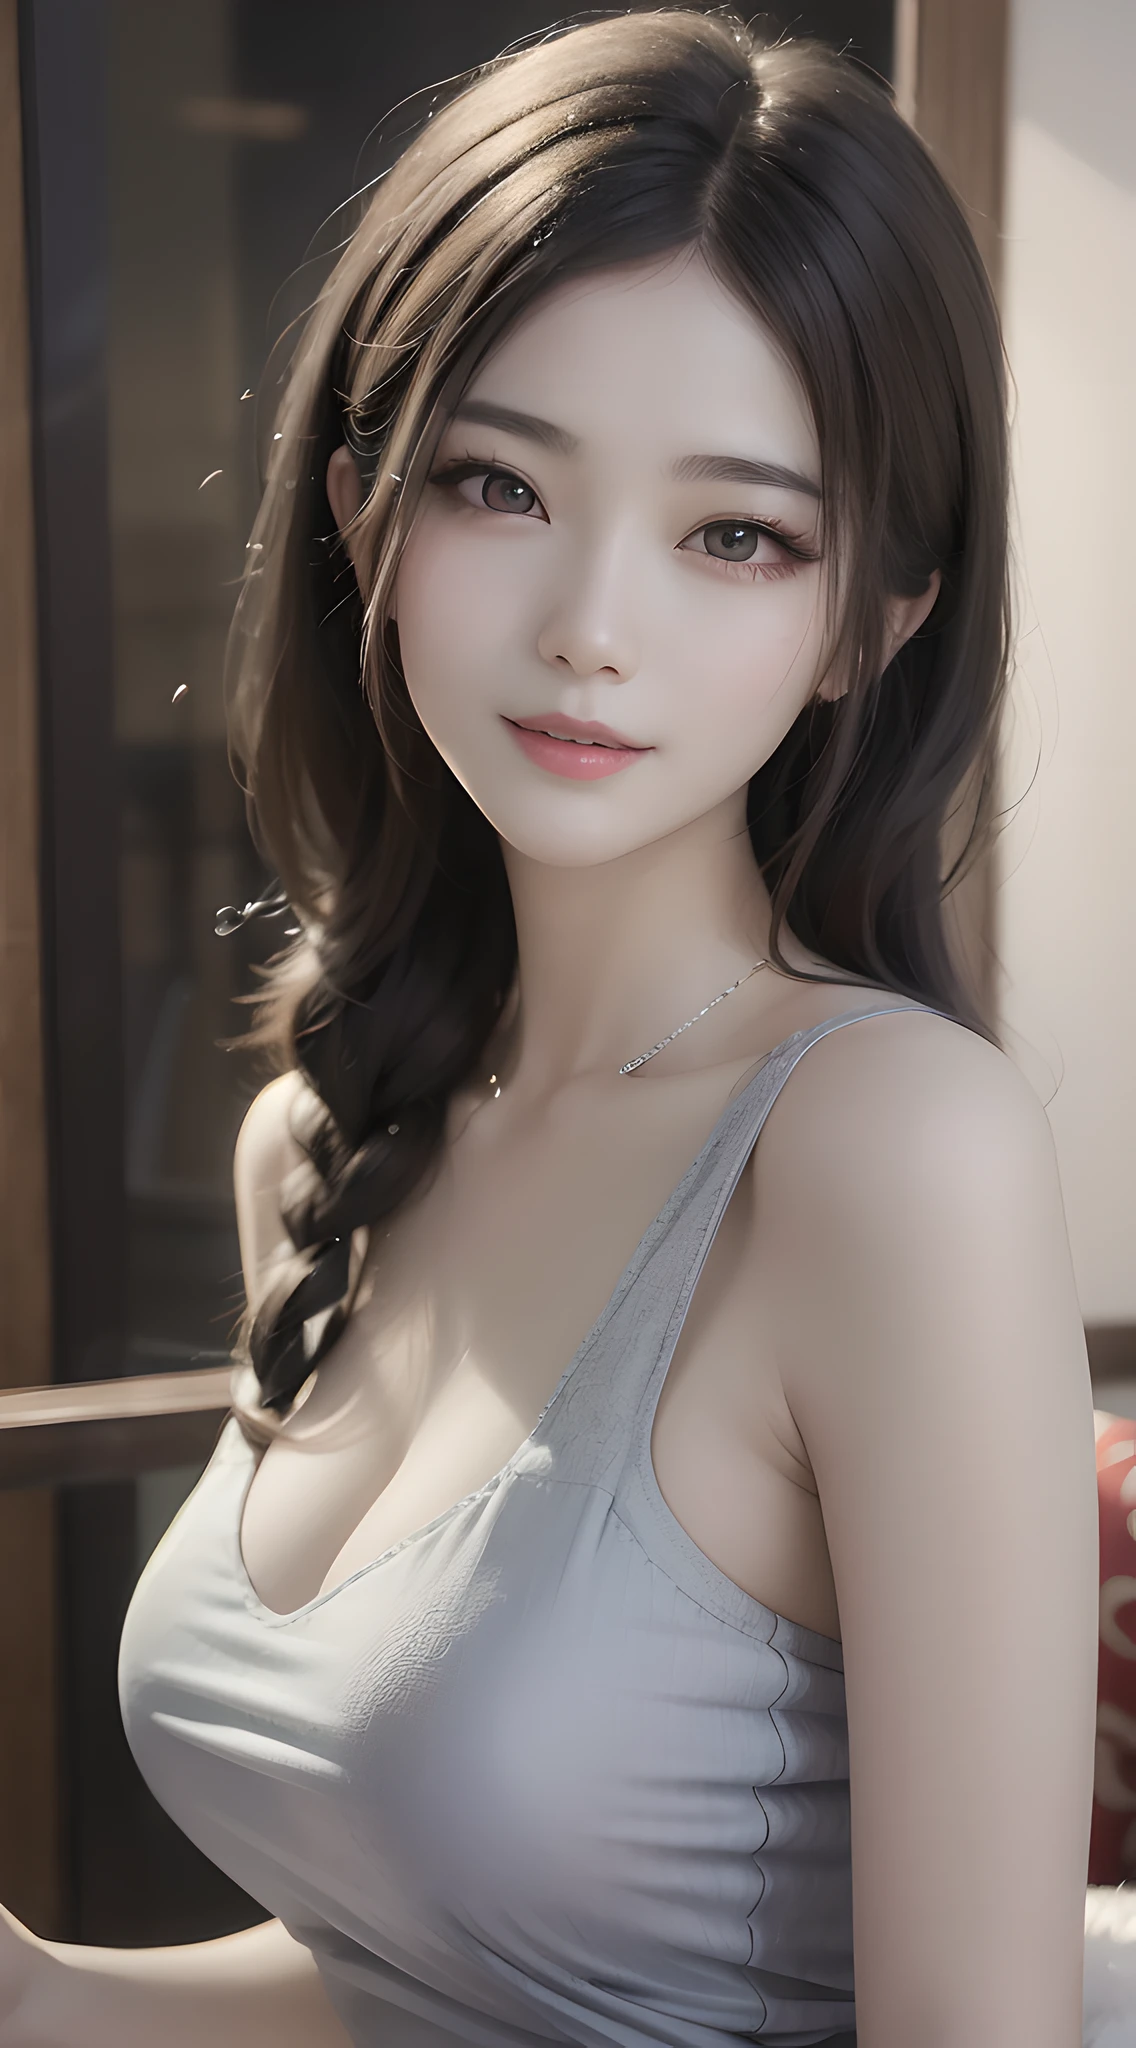 Araffe mulher asiática com cabelo comprido e uma blusa cinza, lindo modelo chinês, linda jovem coreana, linda garota asiática, lindo rosto delicado, pele de porcelana branca leitosa pálida, sorriso amigável e sedutor, linda mulher sul-coreana, lindo sorriso sedutor, linda jovem coreana, Menina coreana, deusa japonesa, bela iluminação suave, alta, magra, linda deusa